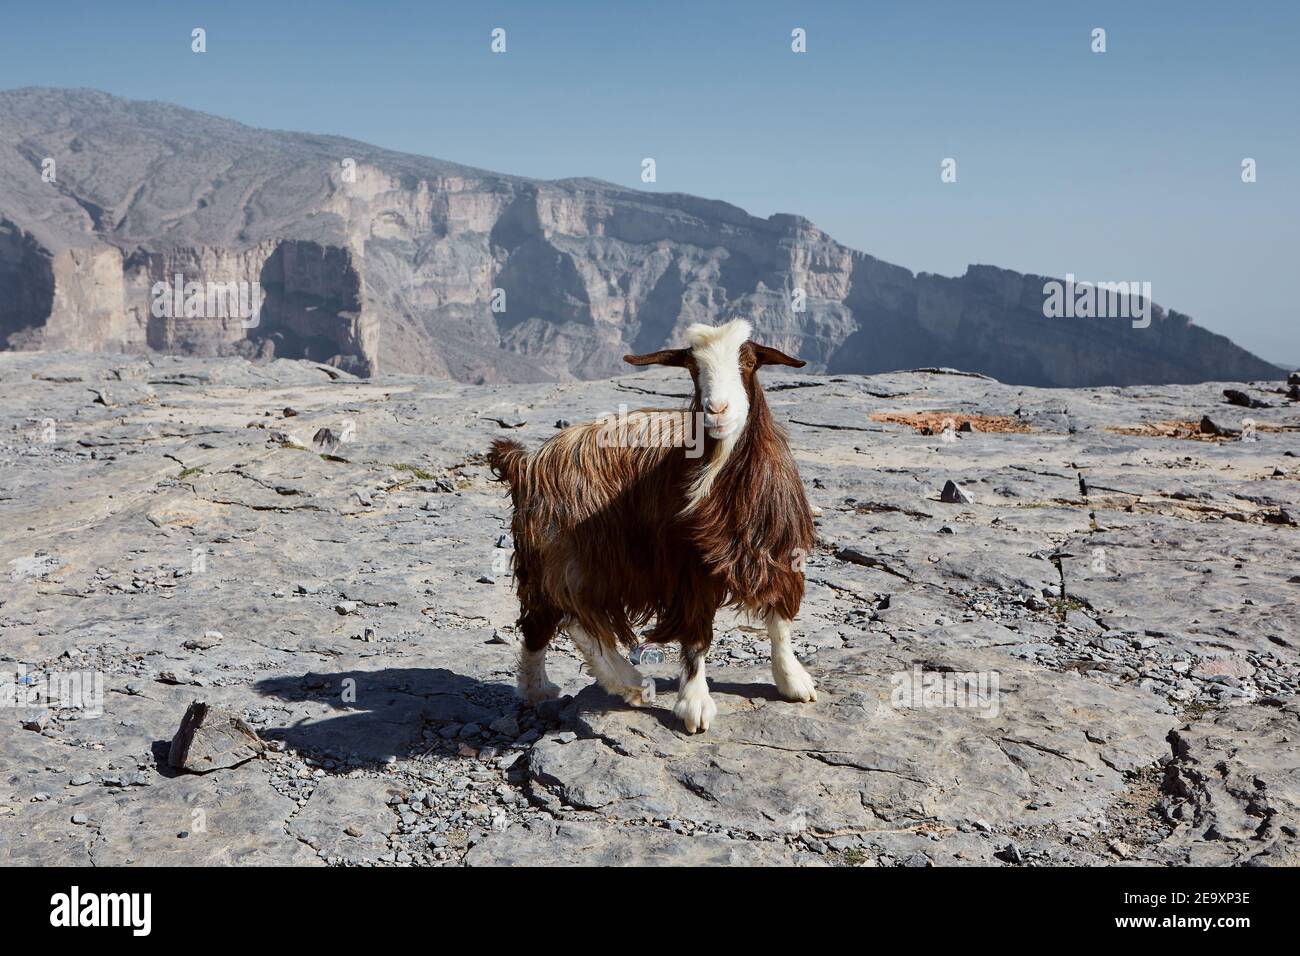 Curieux chèvre regardant l'appareil photo contre le canyon de montagne. Jebel Shams en Oman Banque D'Images